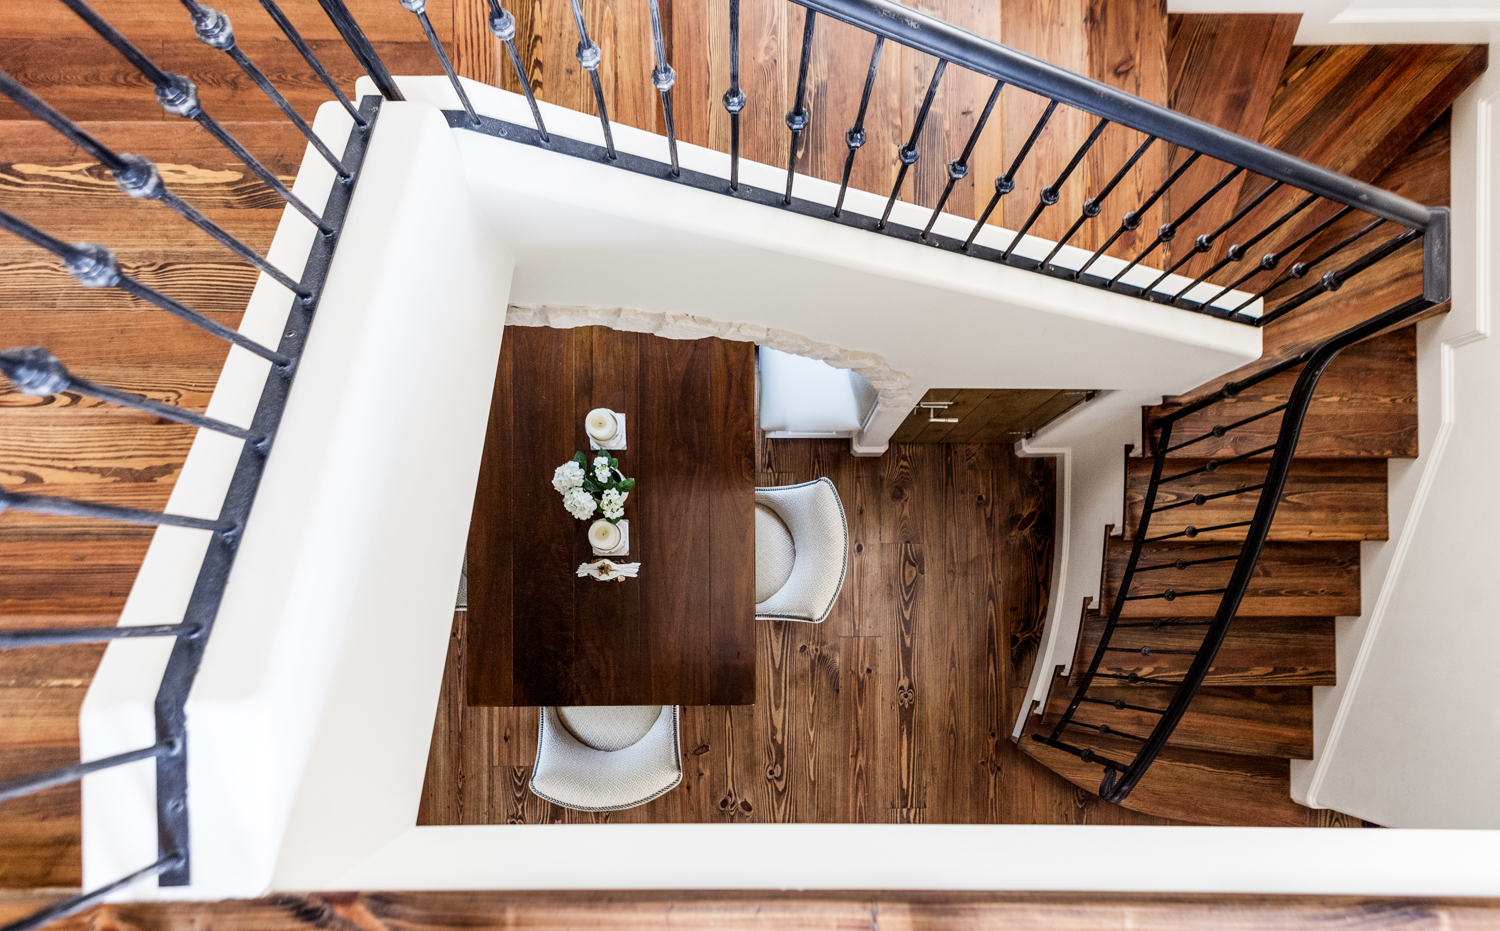 垂直向下看一楼，楼梯上有大片丰富的天然木材色调，与白色墙壁和锻铁栏杆形成鲜明对比。